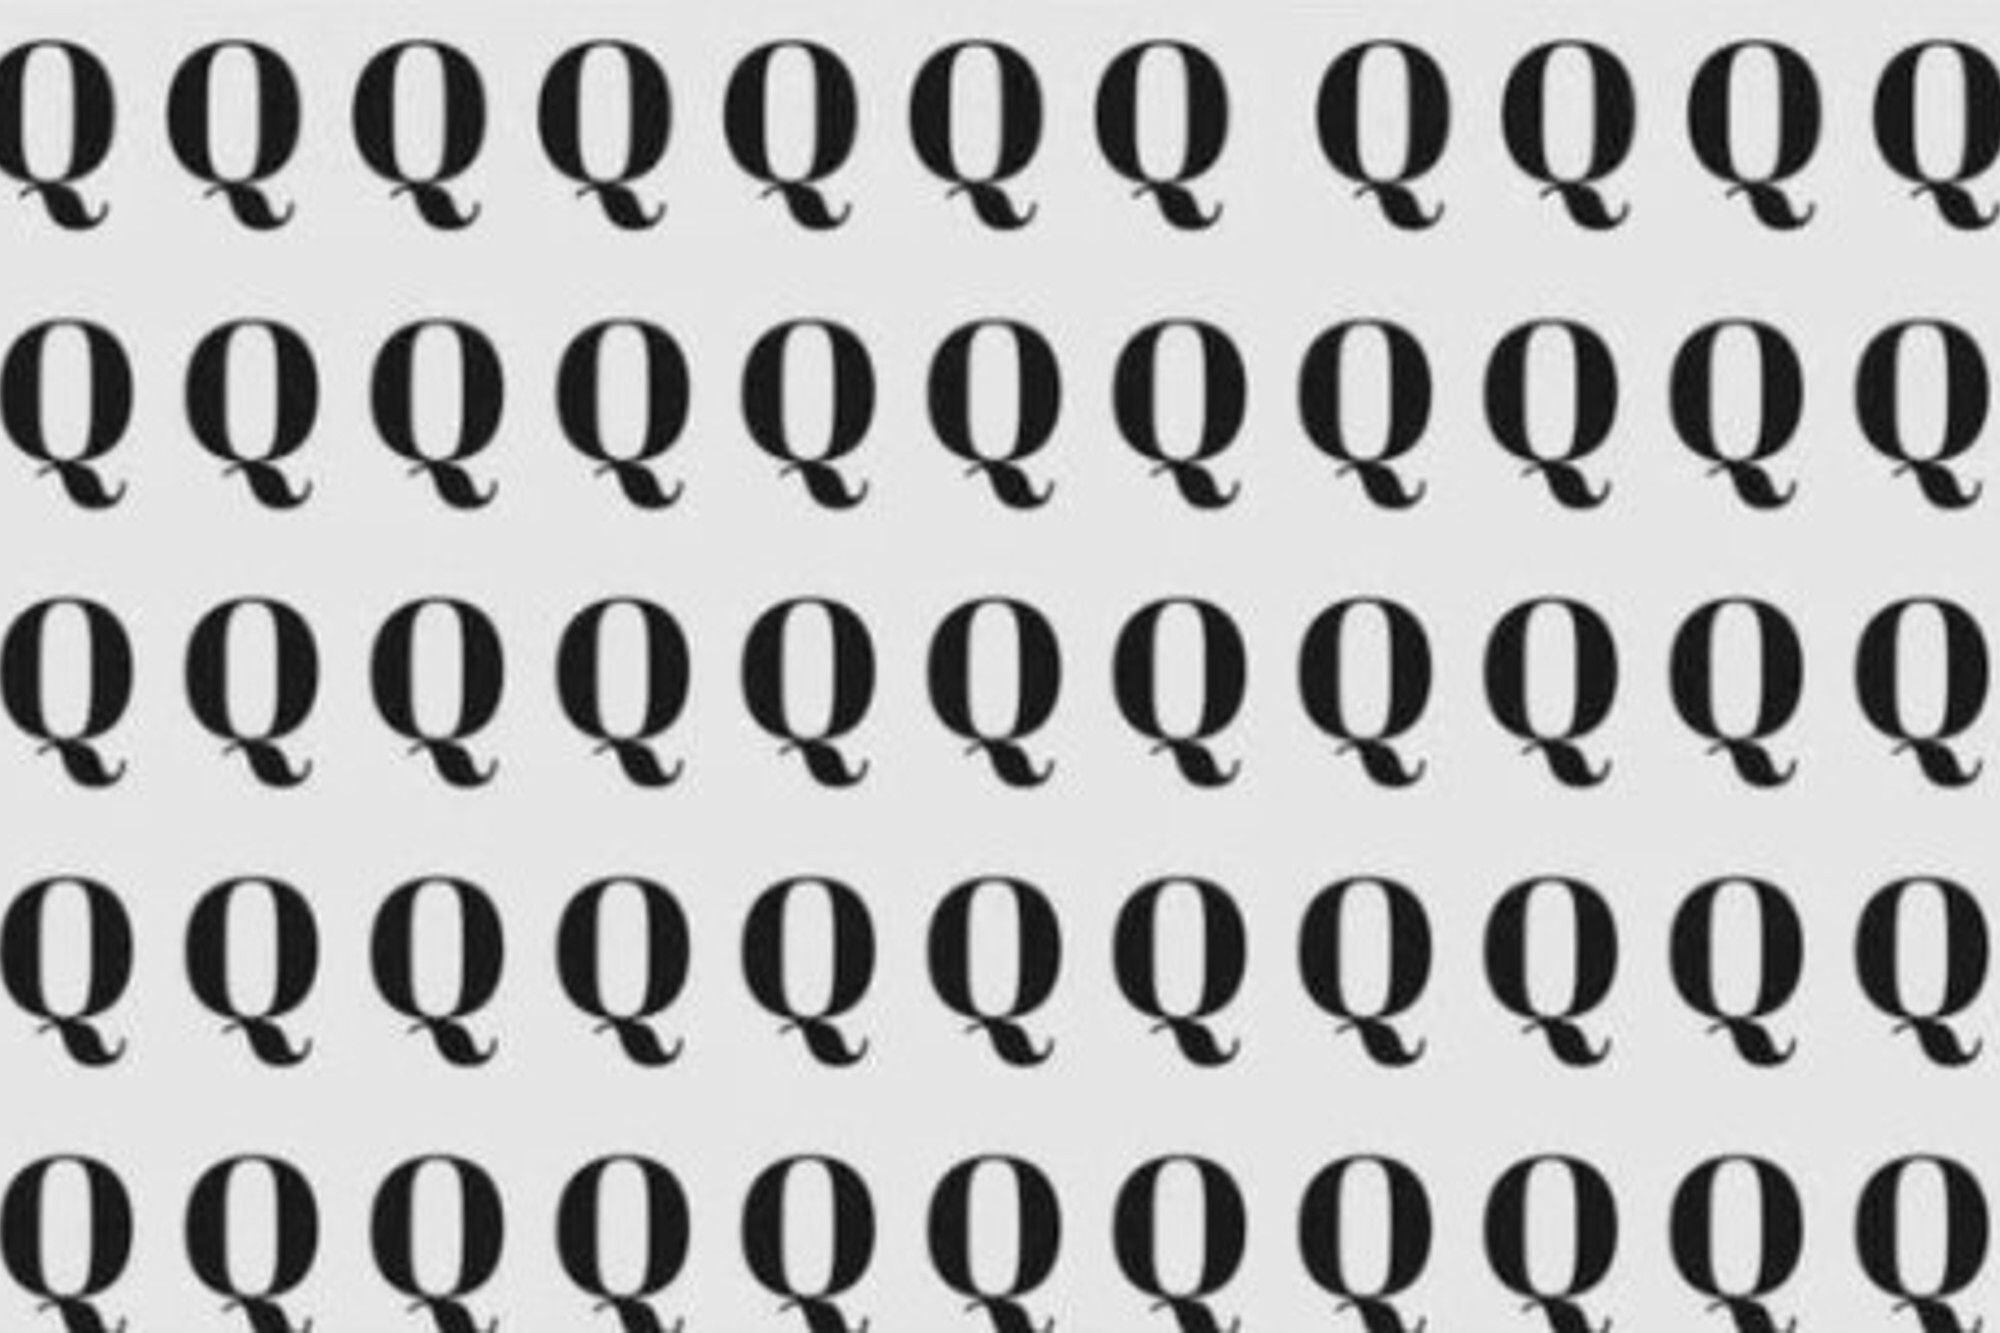 Desafío visual: encontrá la letra O entre todas las Q en menos de 10 segundos